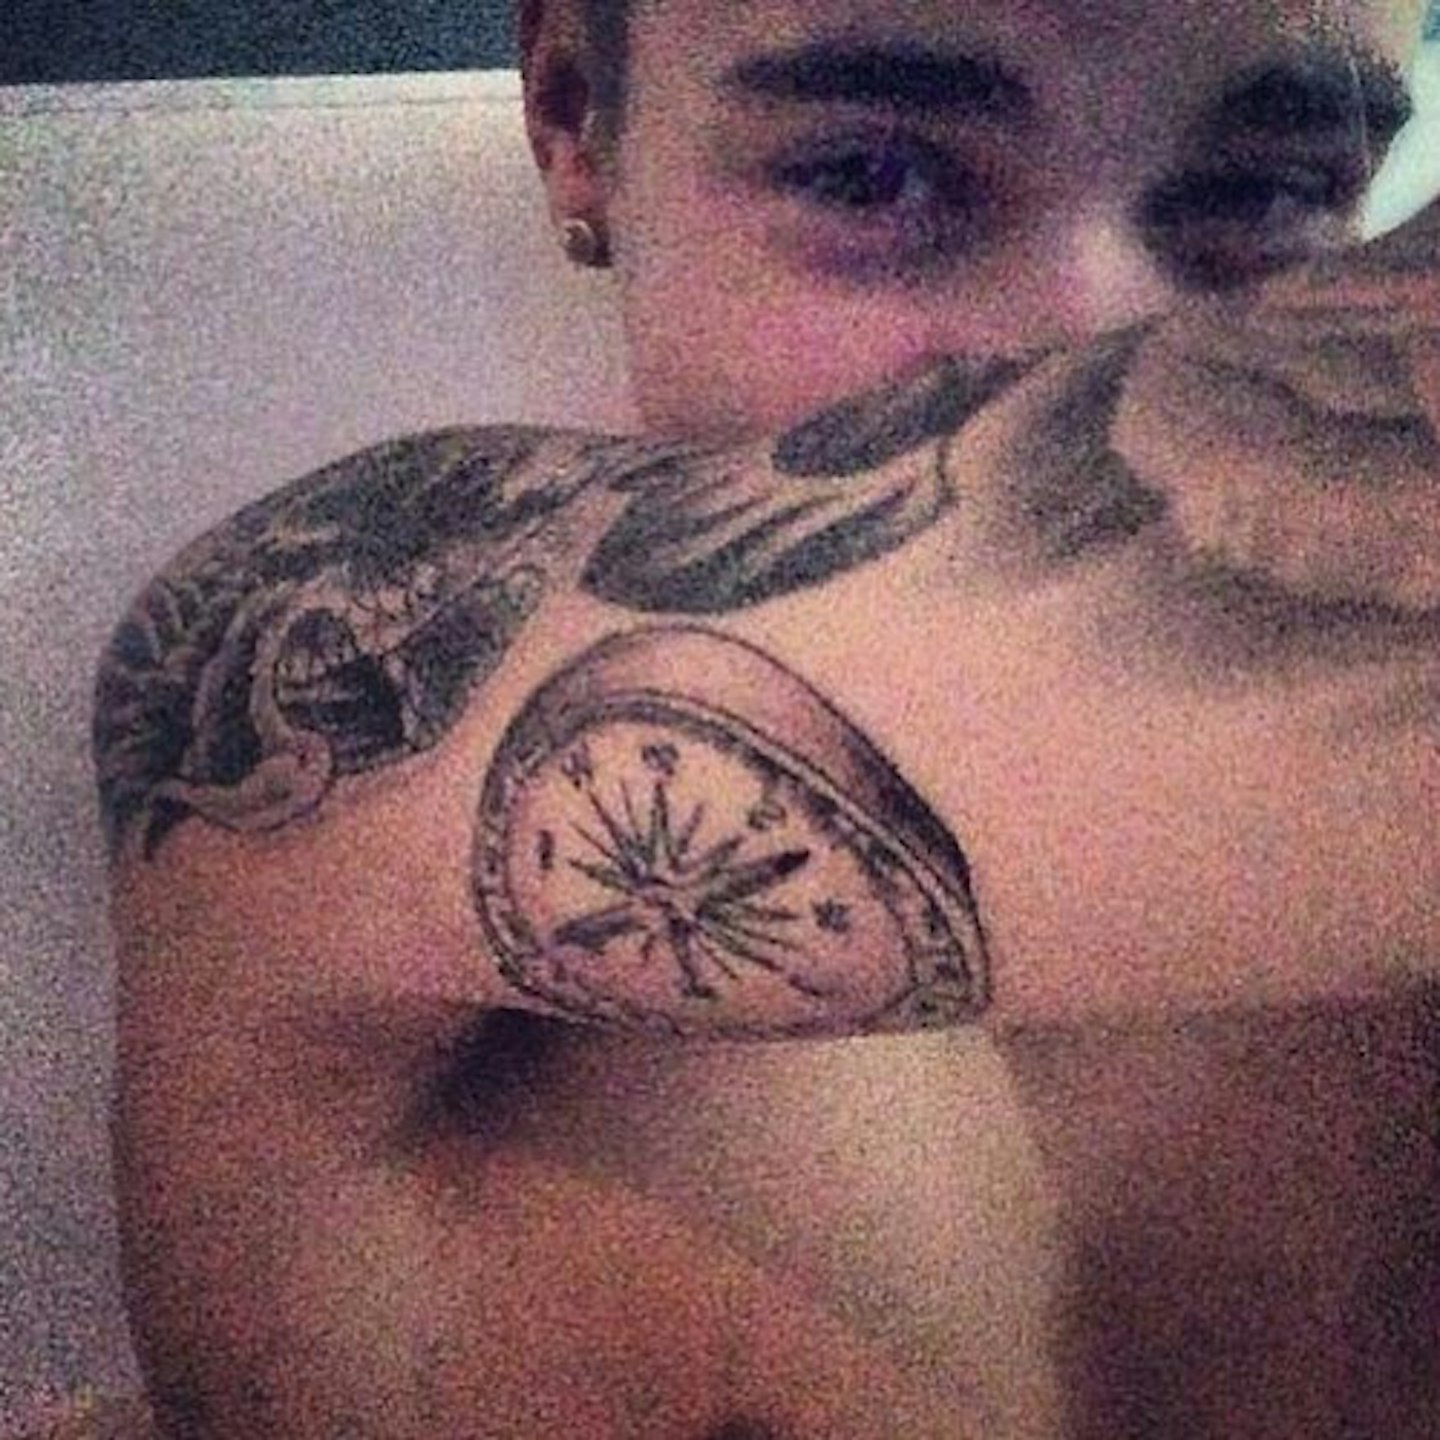 Justin Bieber tattoo